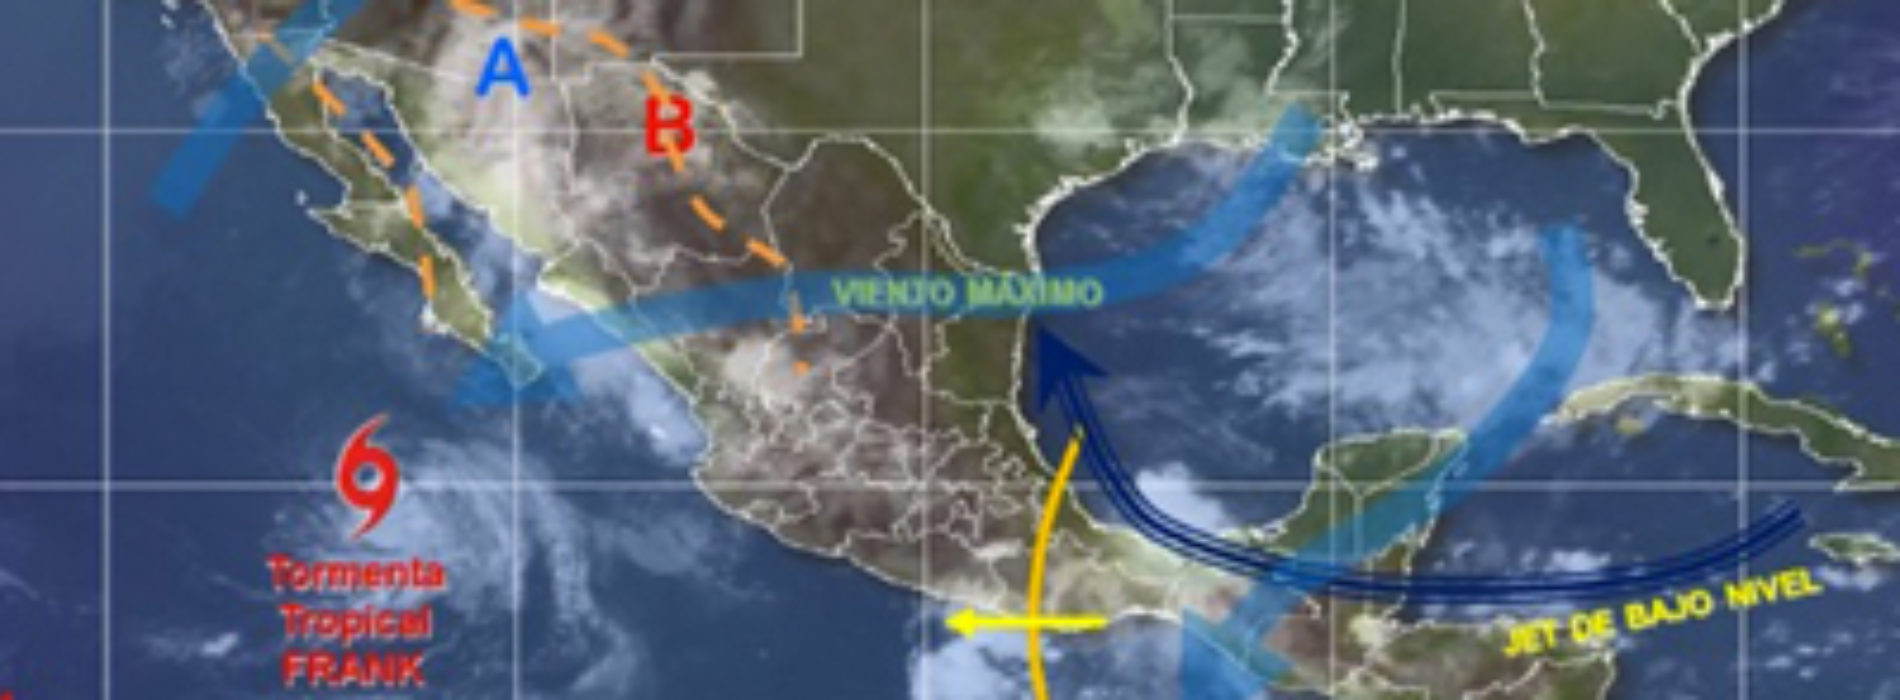 Prevén intervalos de chubascos con tormentas muy fuertes en Oaxaca